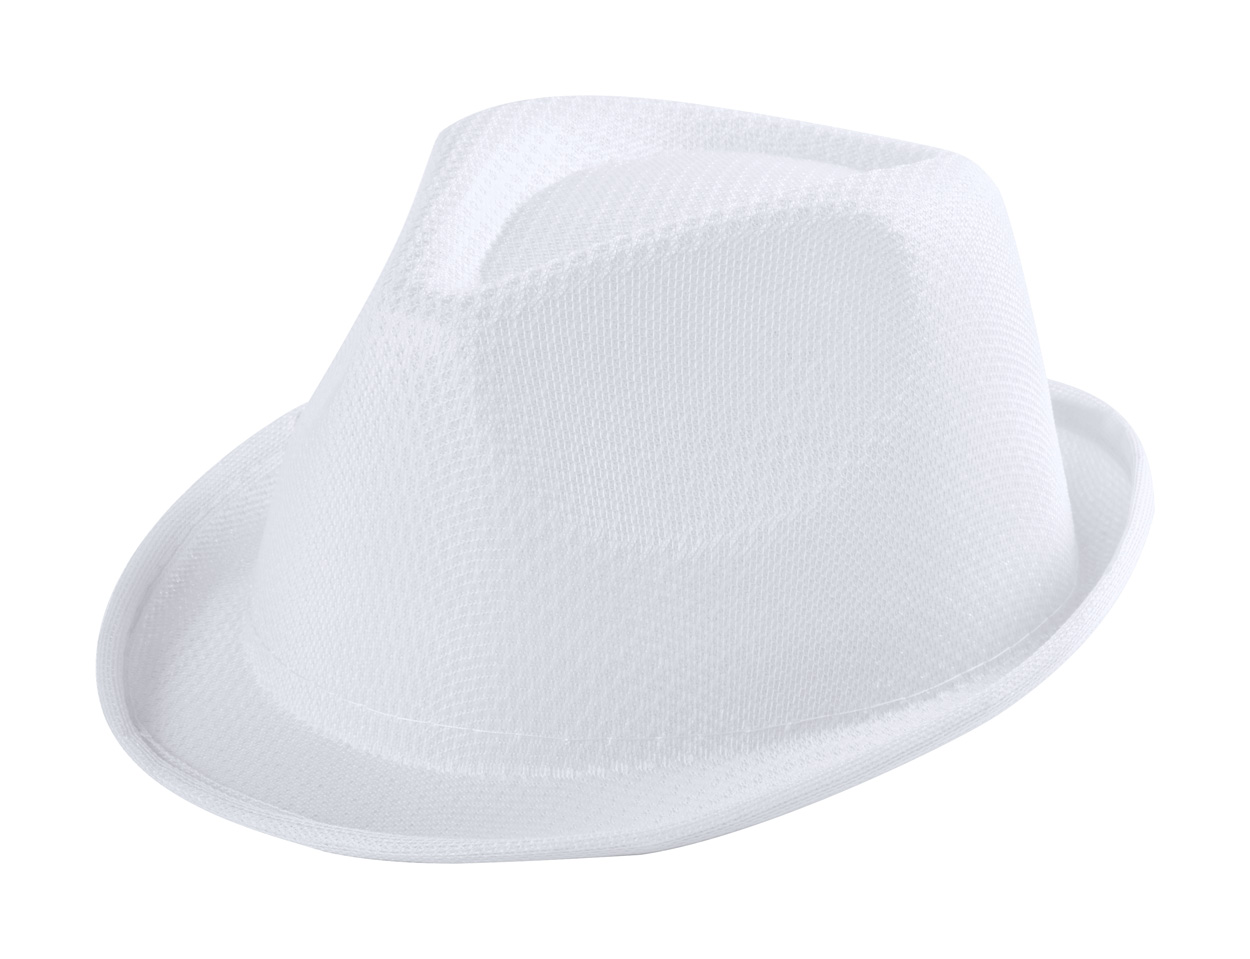 Promo  Tolvex, šešir za djecu, izrađena je od poliestera, bijele boje